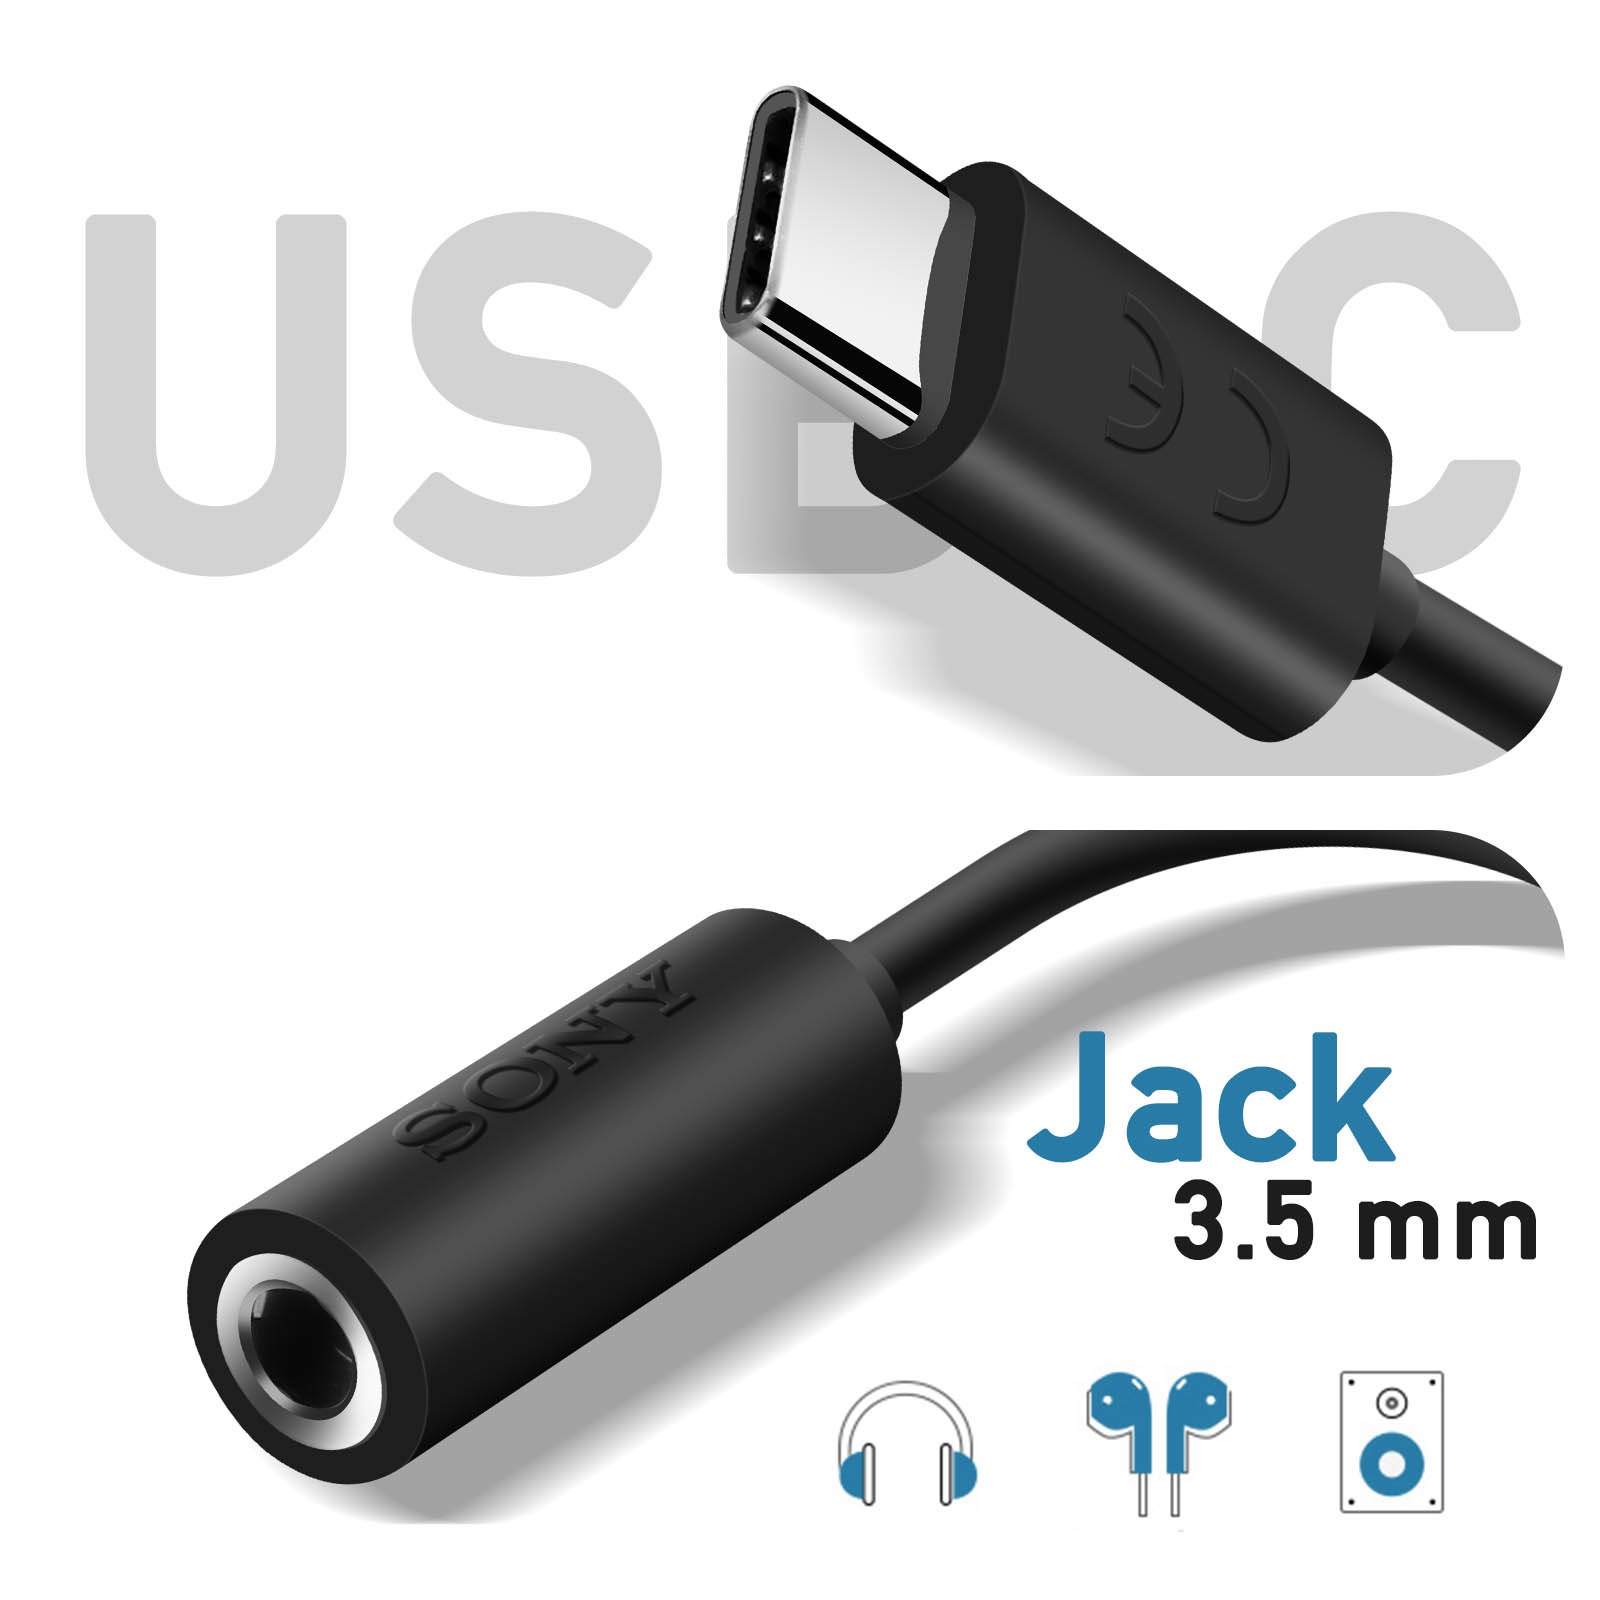 Adaptadores USB C Mini Jack de 3,5 mm, adaptadores de audio para